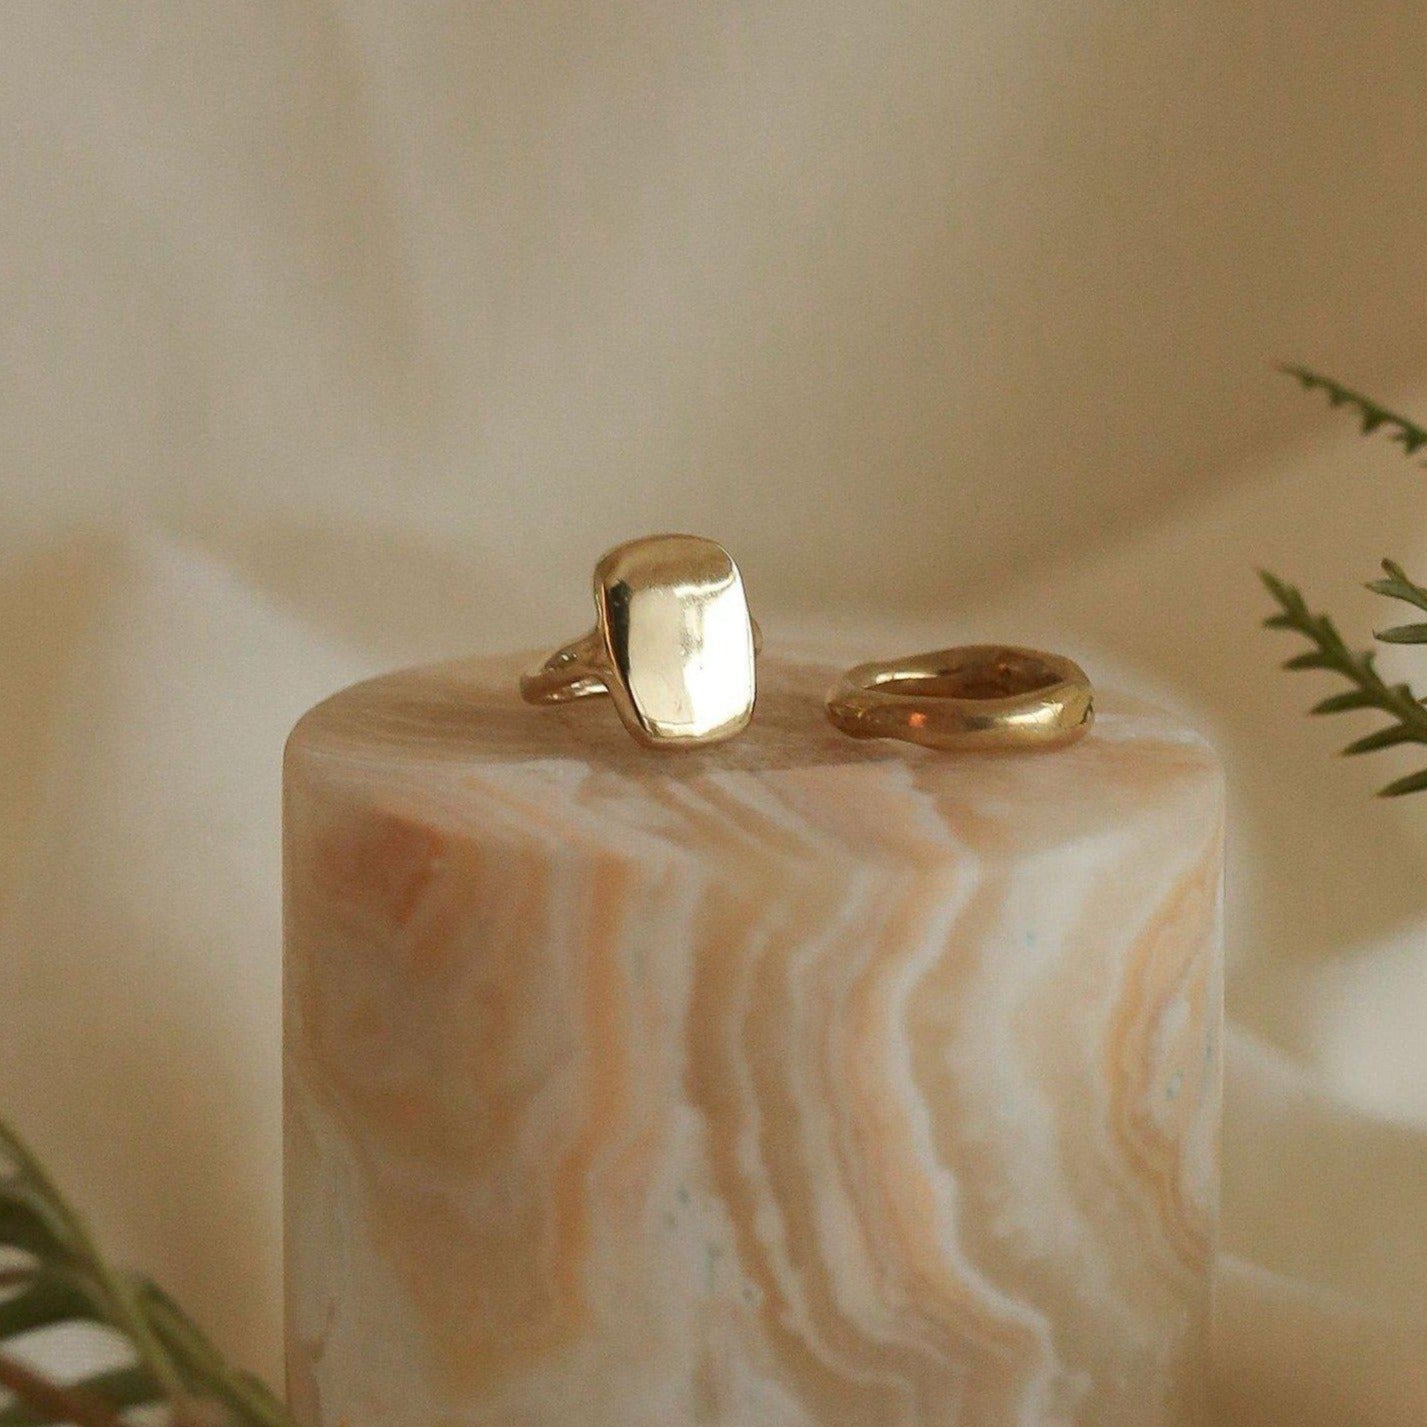 Ingot Ring - What is a signet ring?